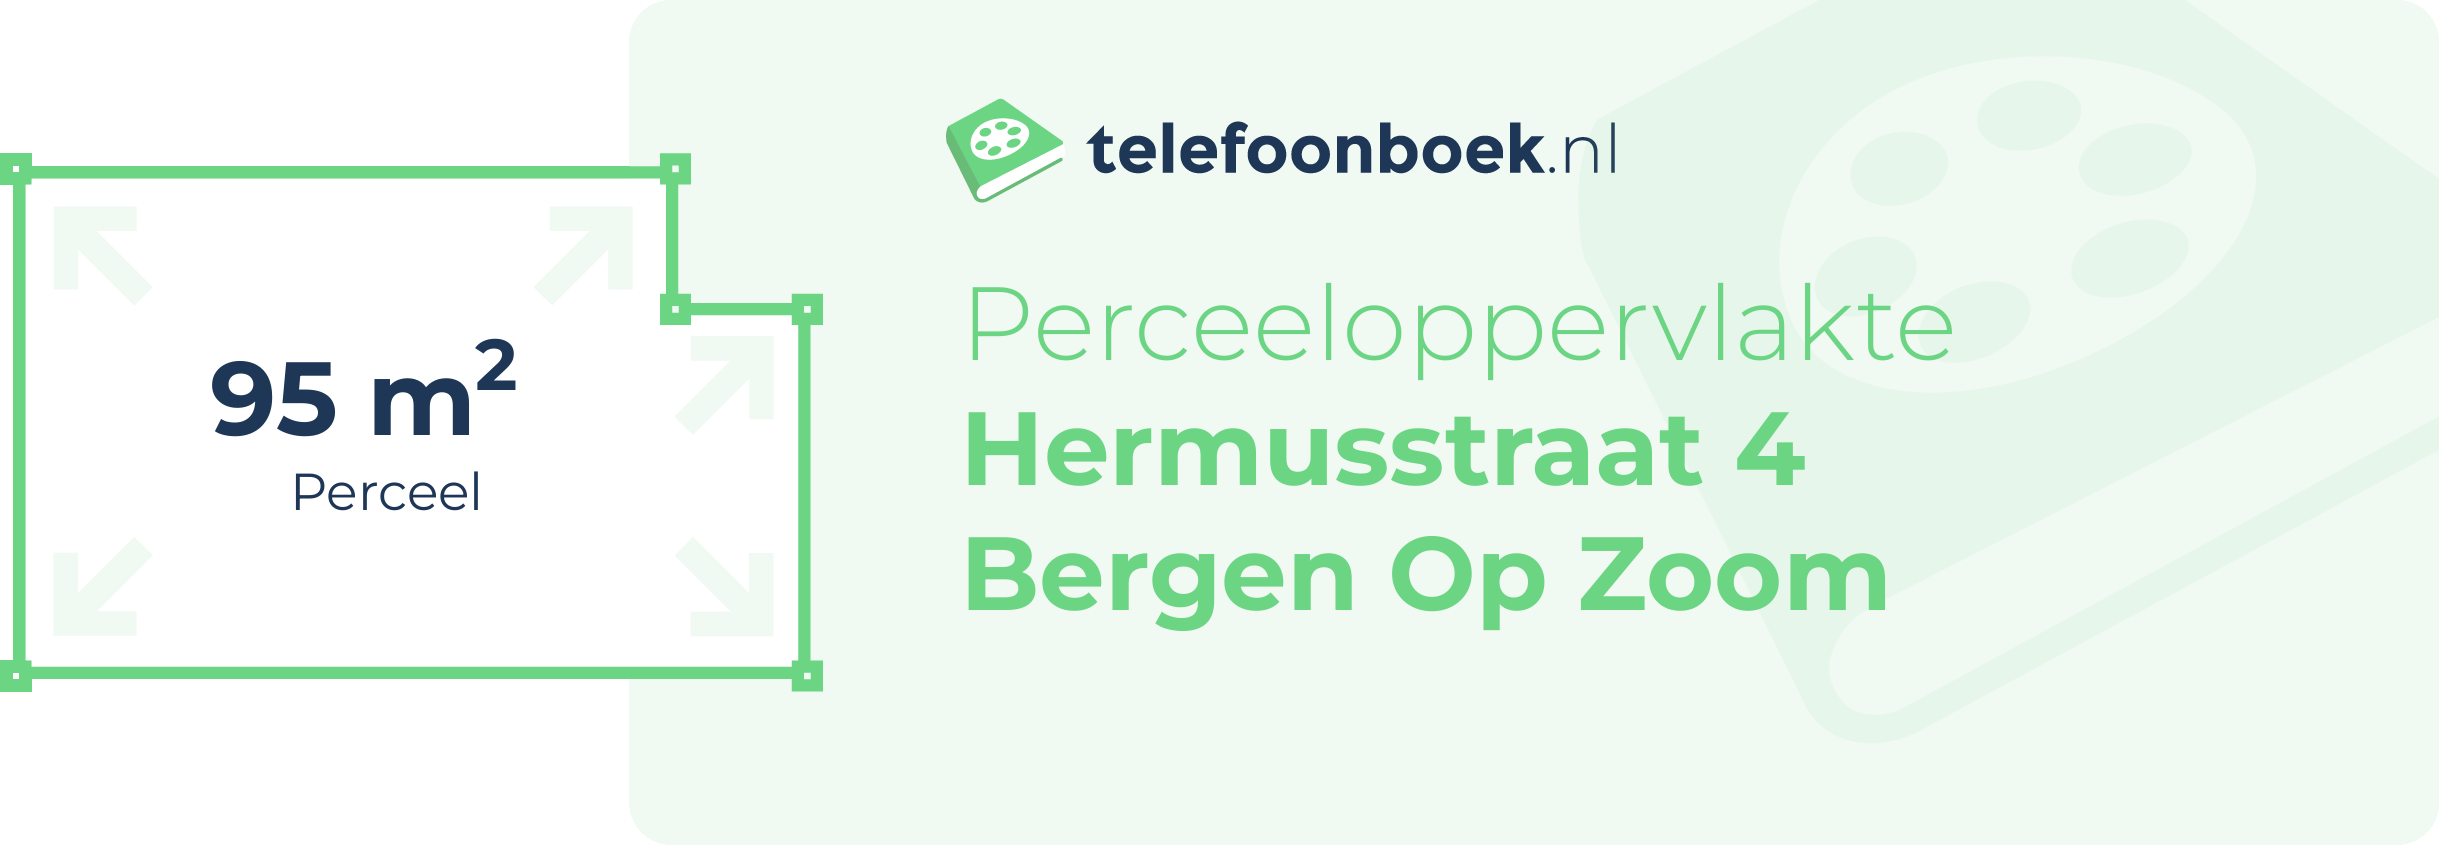 Perceeloppervlakte Hermusstraat 4 Bergen Op Zoom